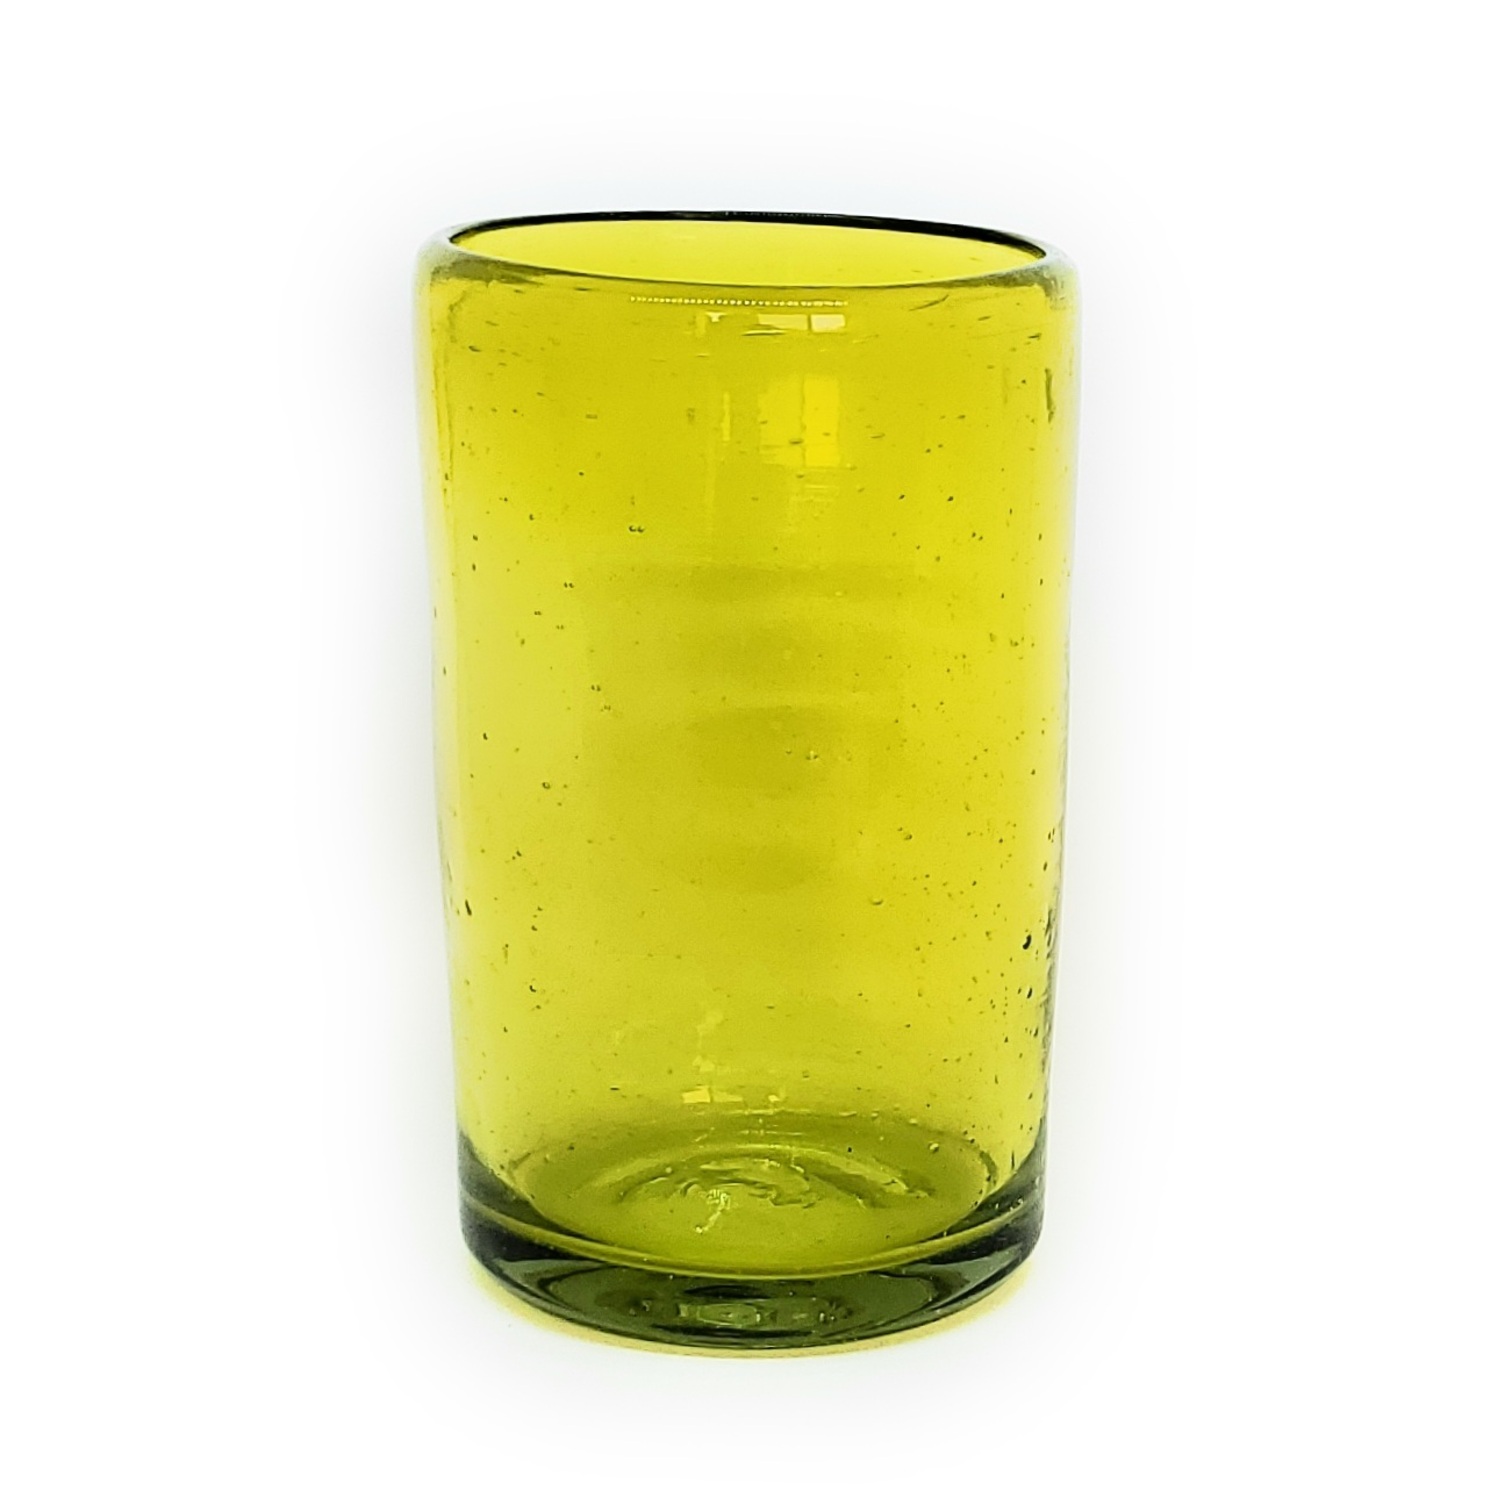 Novedades / Juego de 6 vasos grandes color amarillos / Éstos artesanales vasos le darán un toque clásico a su bebida favorita.